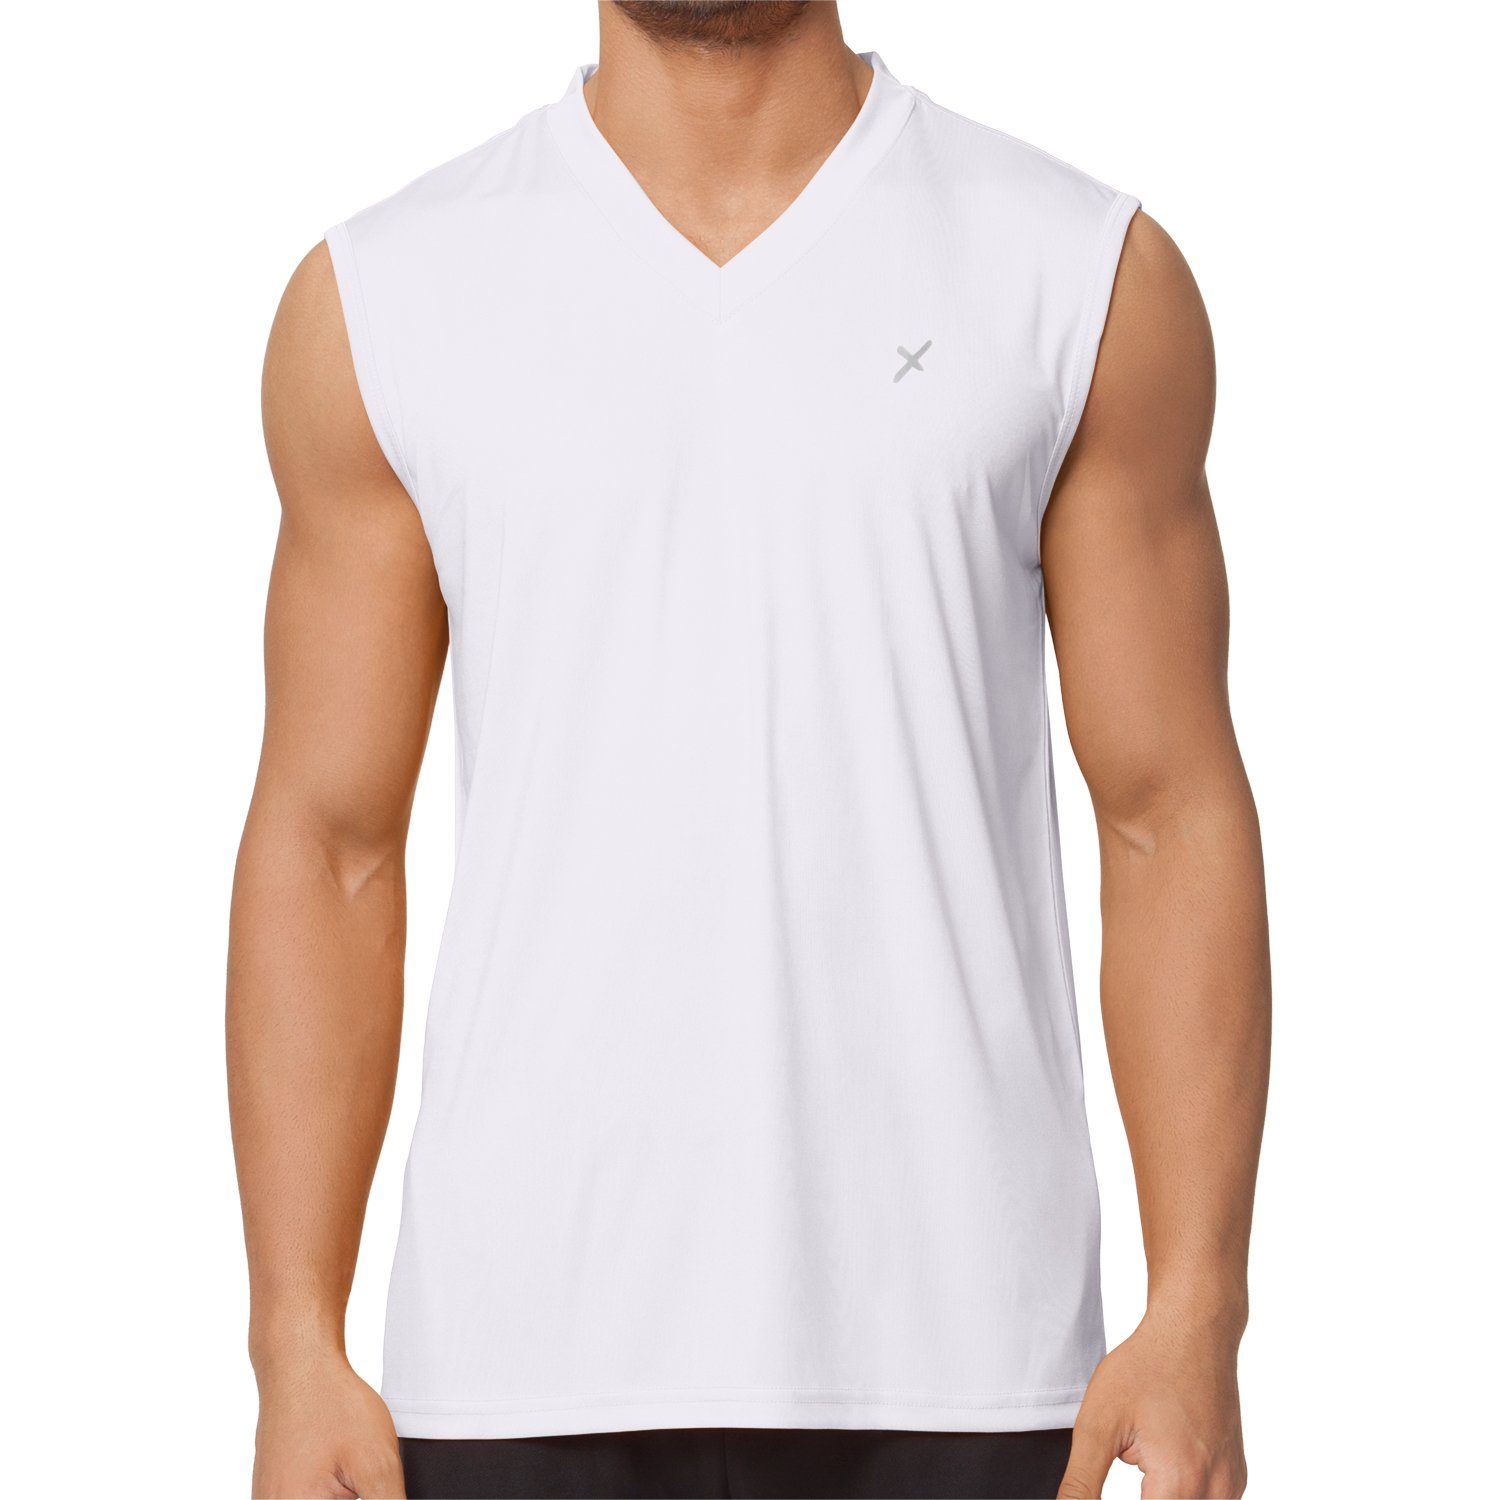 CFLEX Trainingsshirt Herren Sport Shirt Fitness Muscle-Shirt Sportswear Collection Weiß